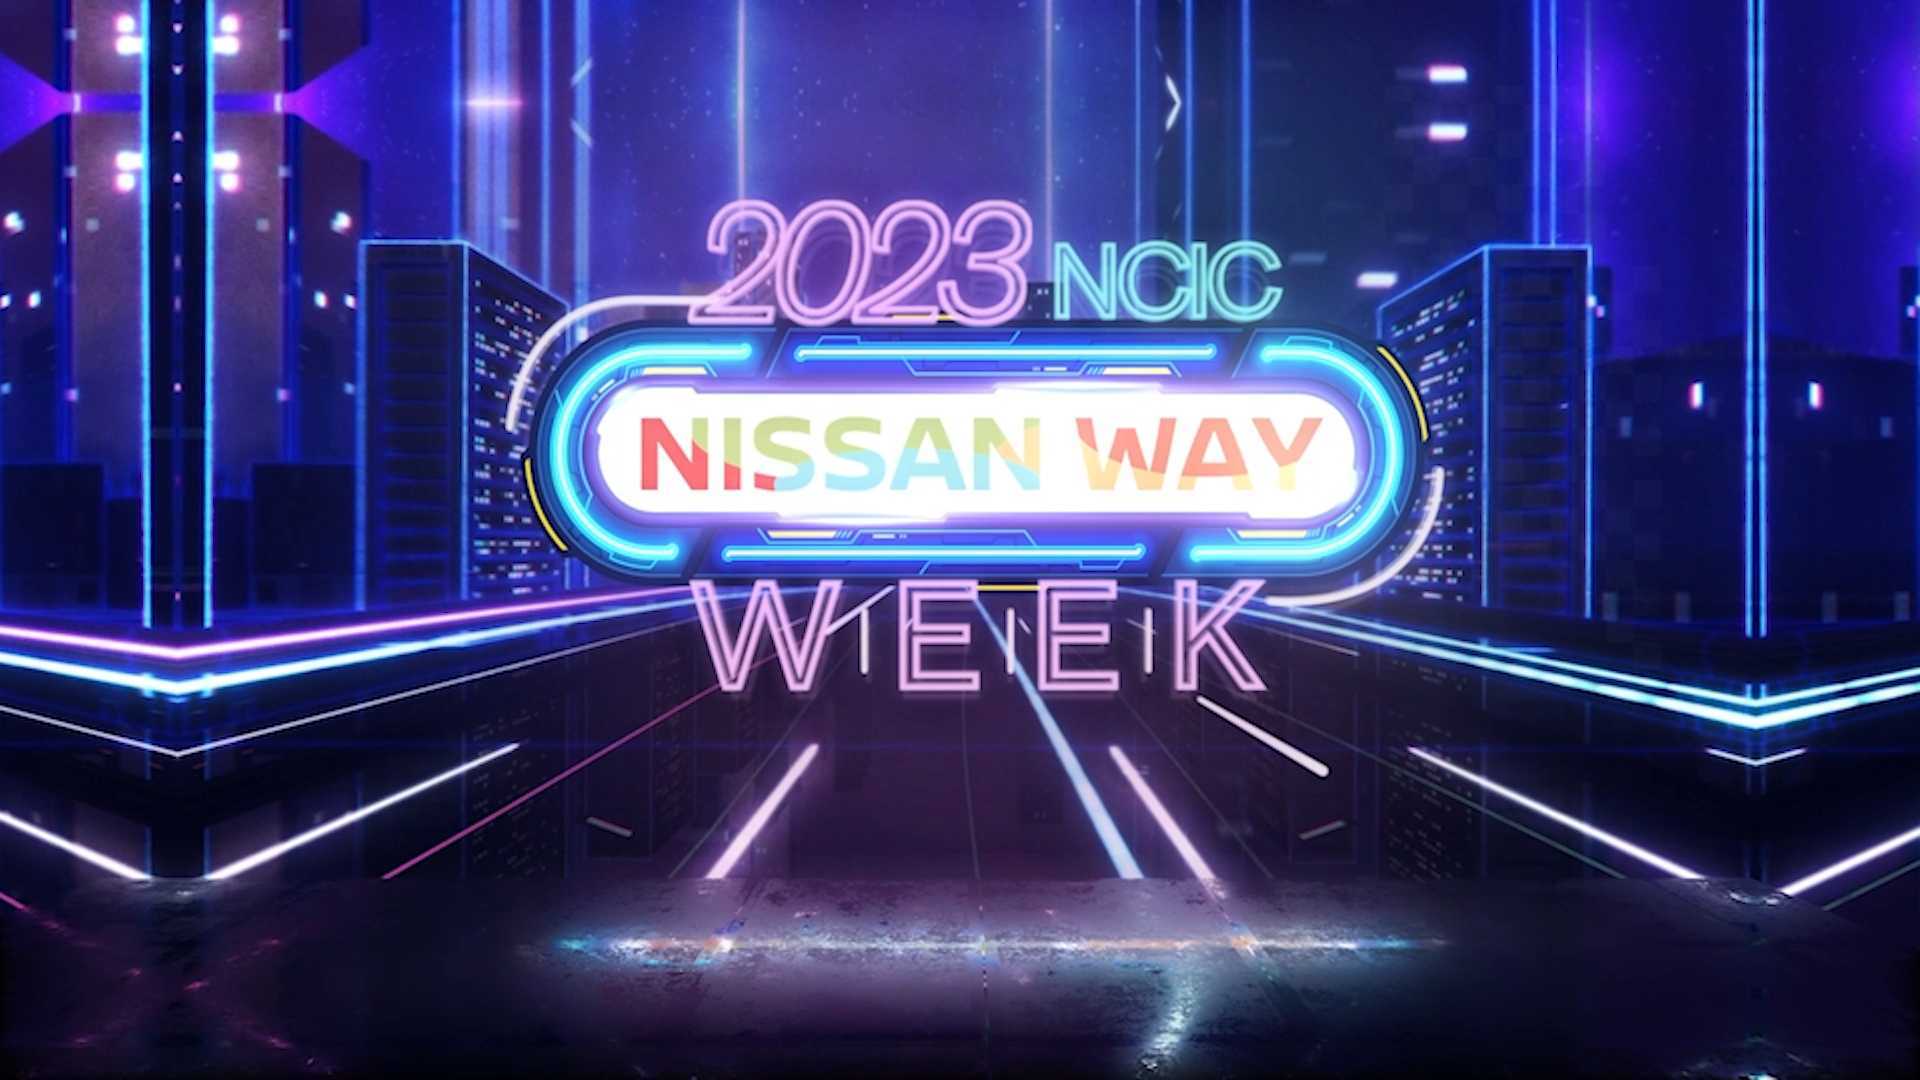 2023 NCIC NISSAN WAY WEEK